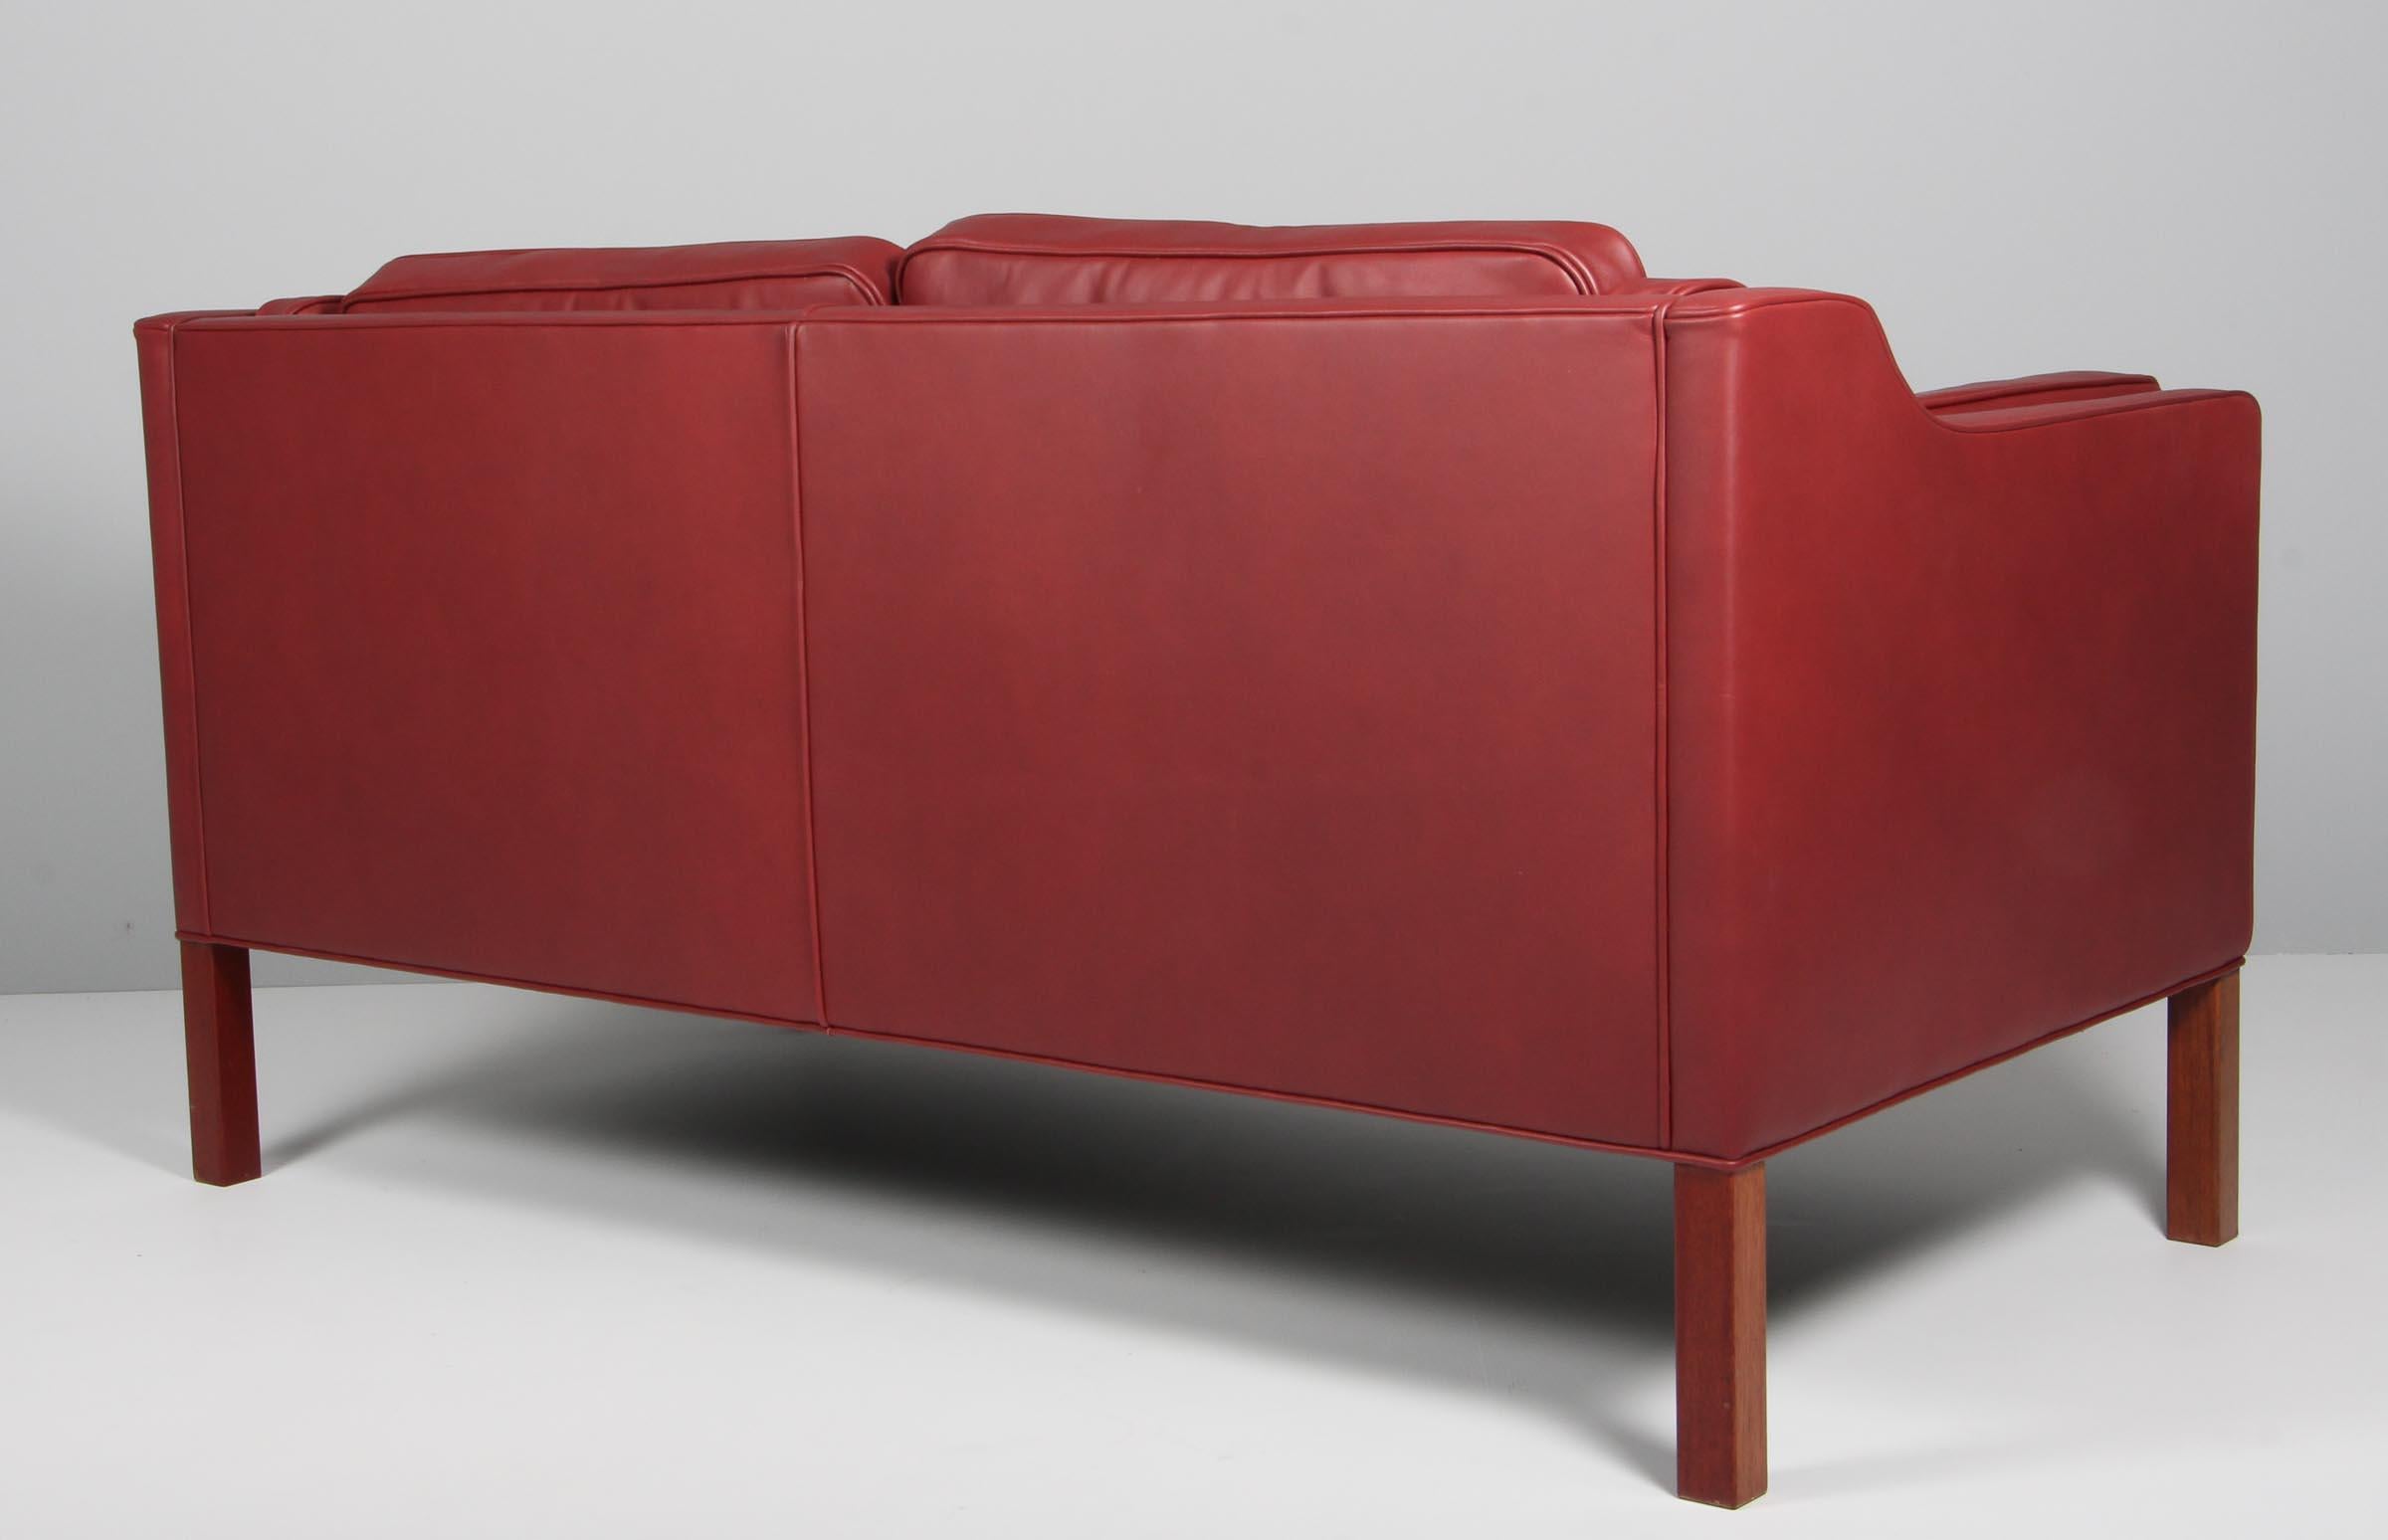 Canapé deux places Børge Mogensen, neuf, recouvert de cuir aniline rouge indien élégant.

Pieds en acajou.

Modèle 2212, fabriqué par Fredericia Furniture.